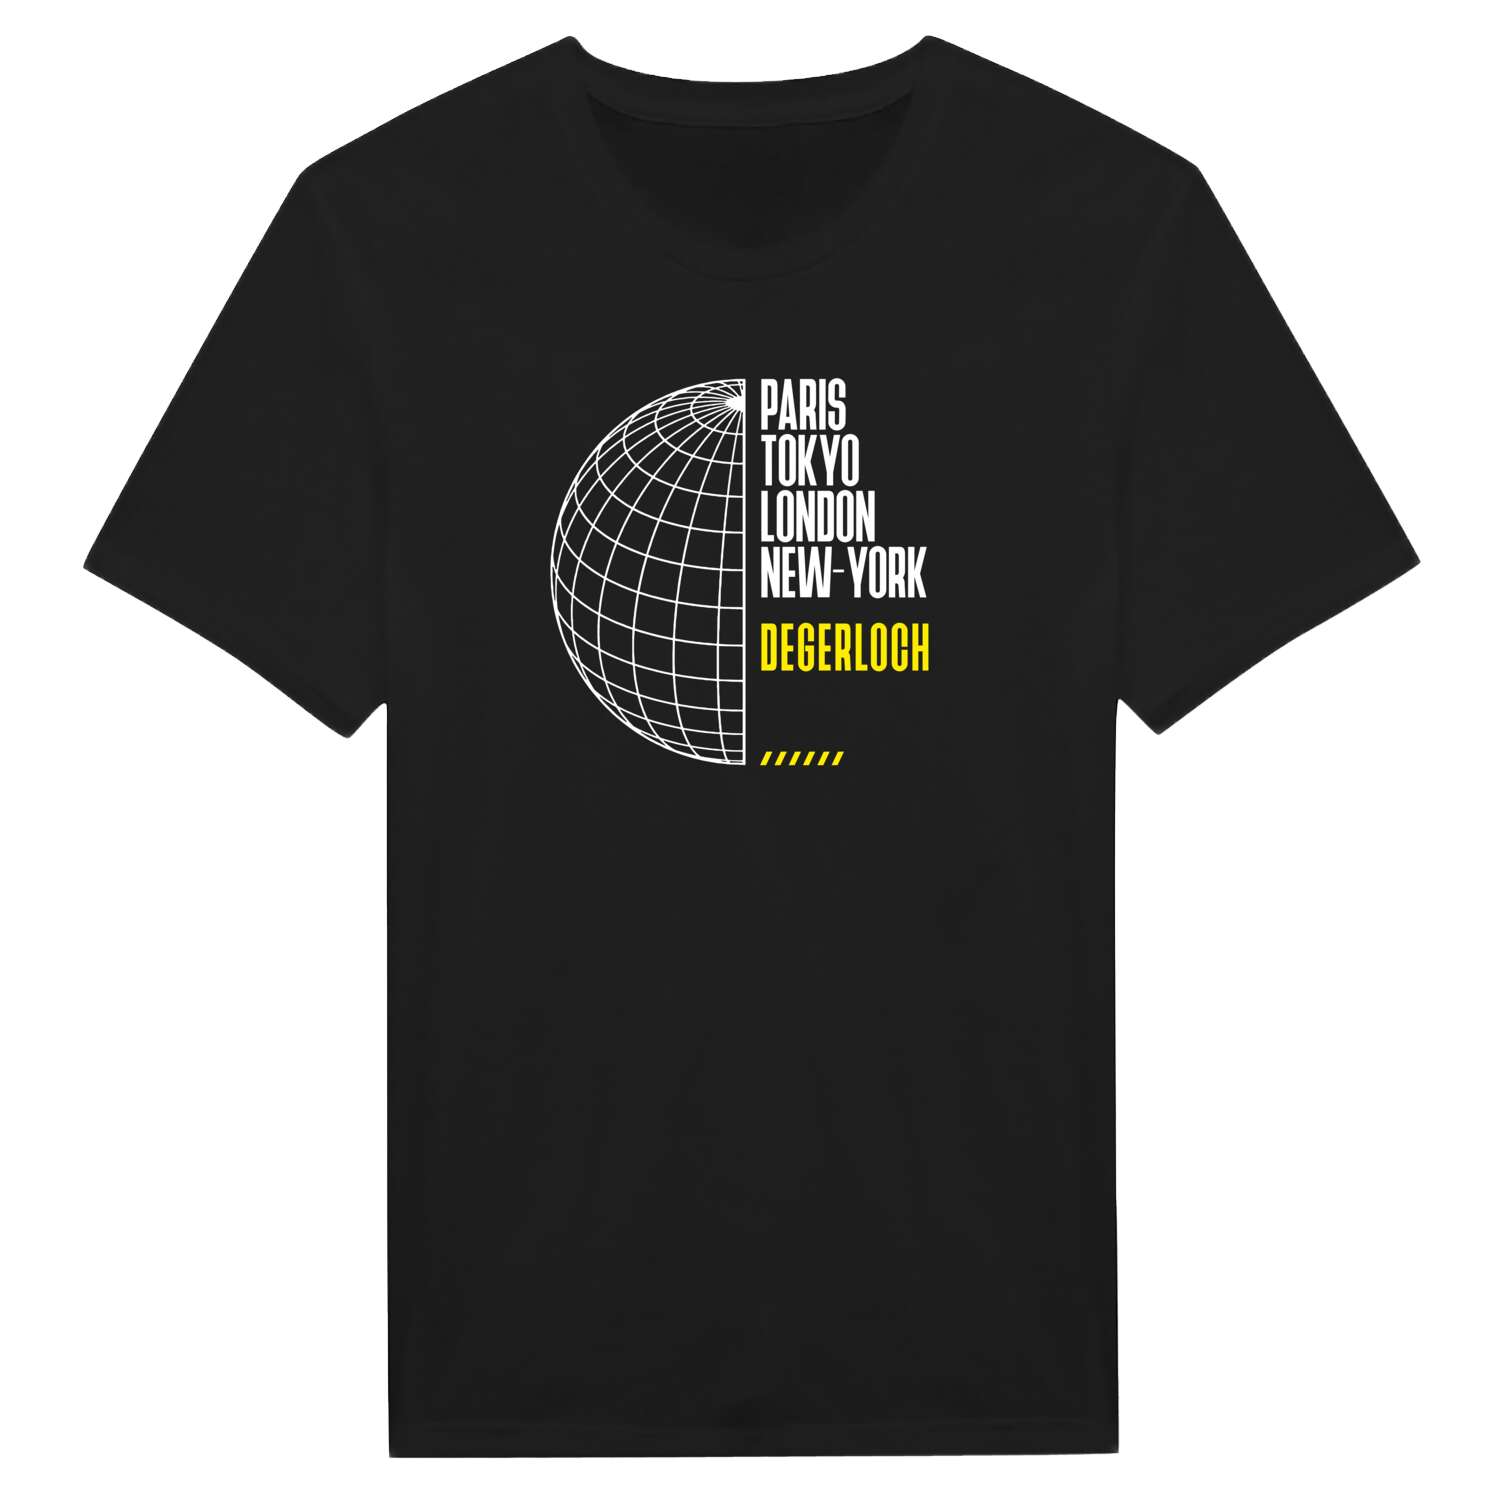 Degerloch T-Shirt »Paris Tokyo London«